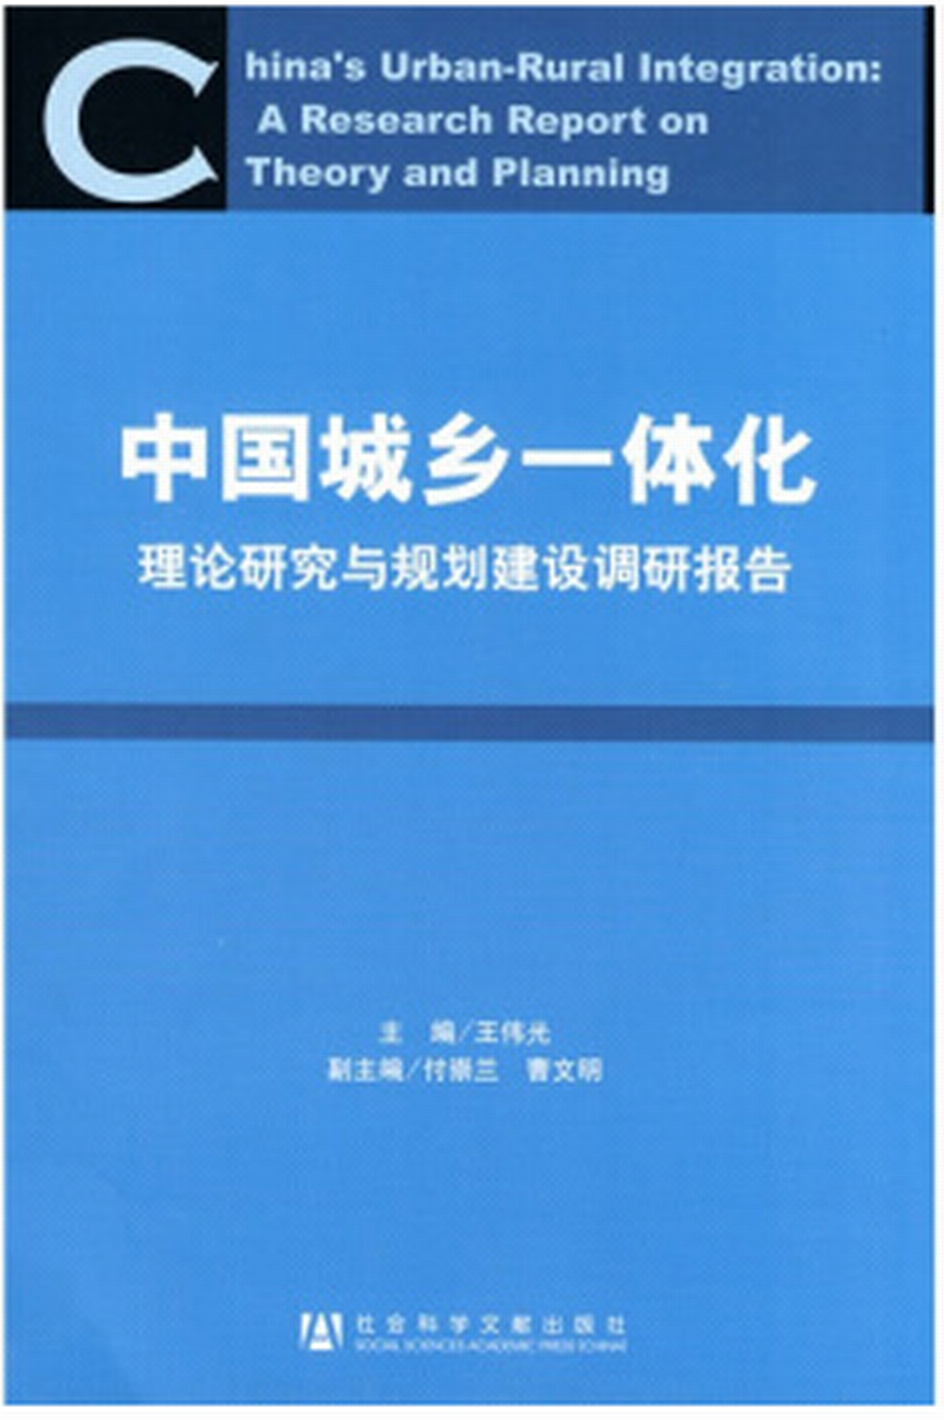 中國城鄉一體化：理論研究與規劃建設調研報告